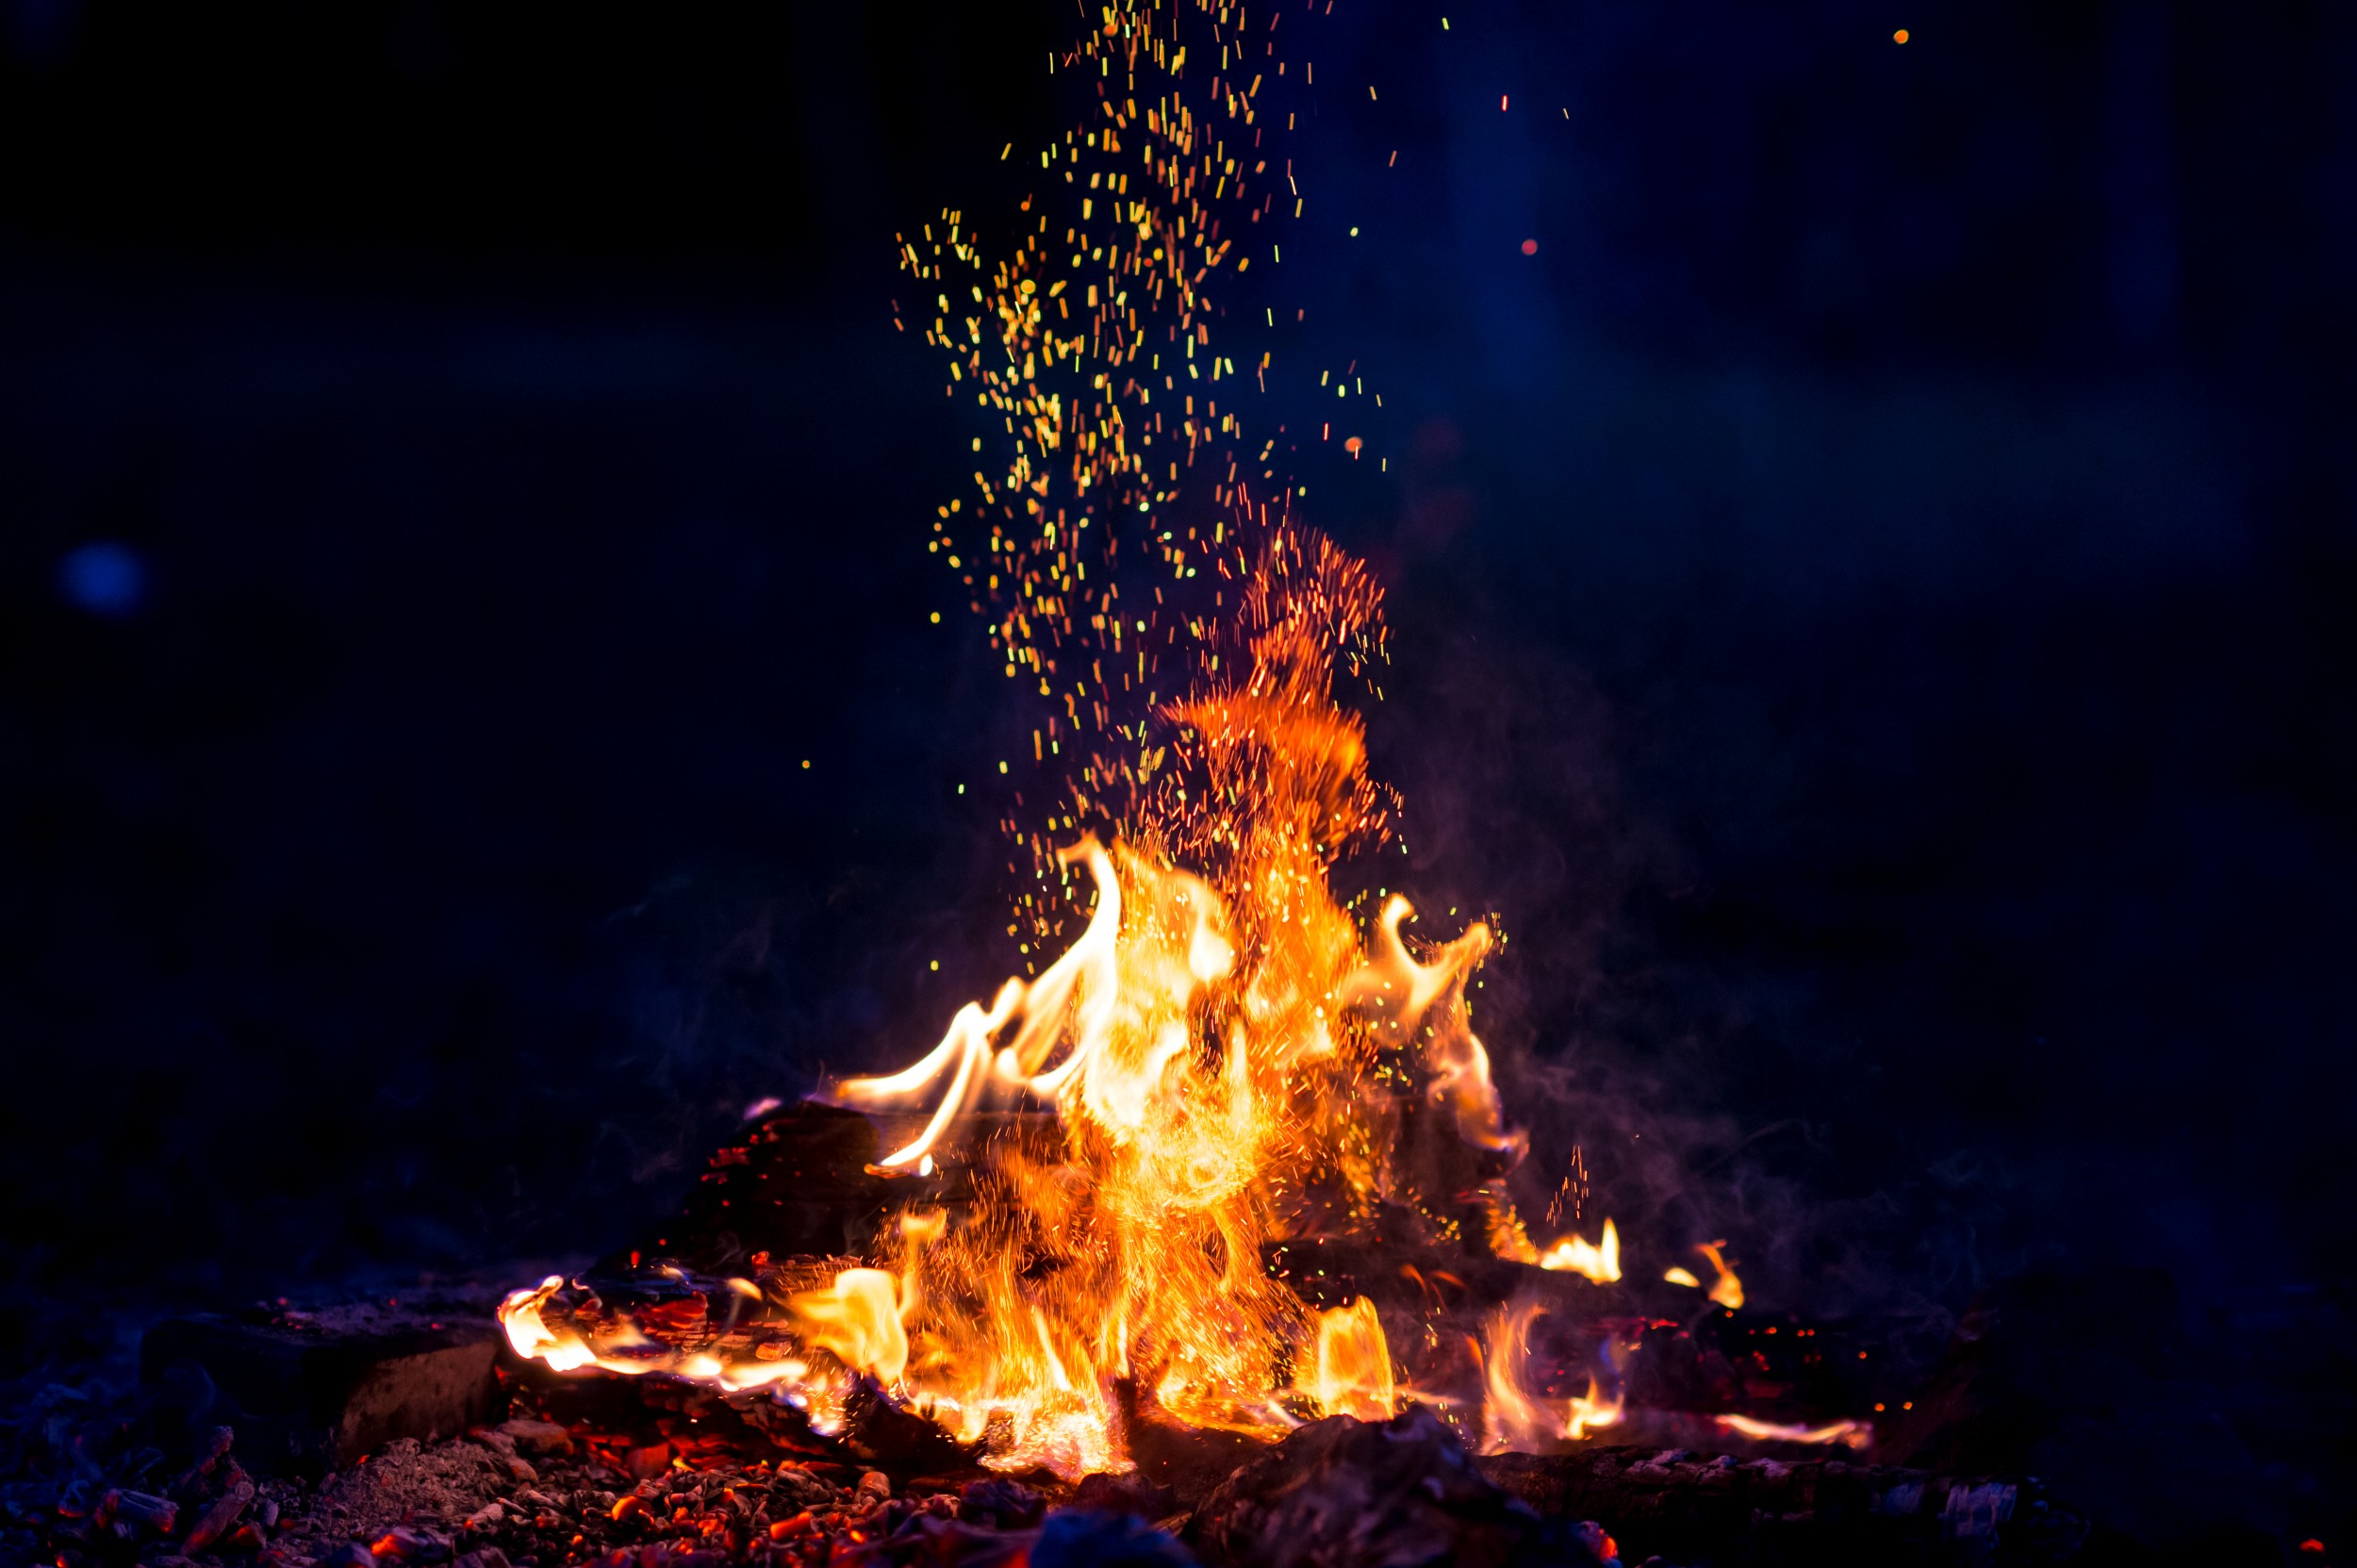 Ein Feuer verbreitet Wärme und Behaglichkeit, verschmutzt aber auch die Luft. Sauberer sind automatisch betriebene Feuerungen.